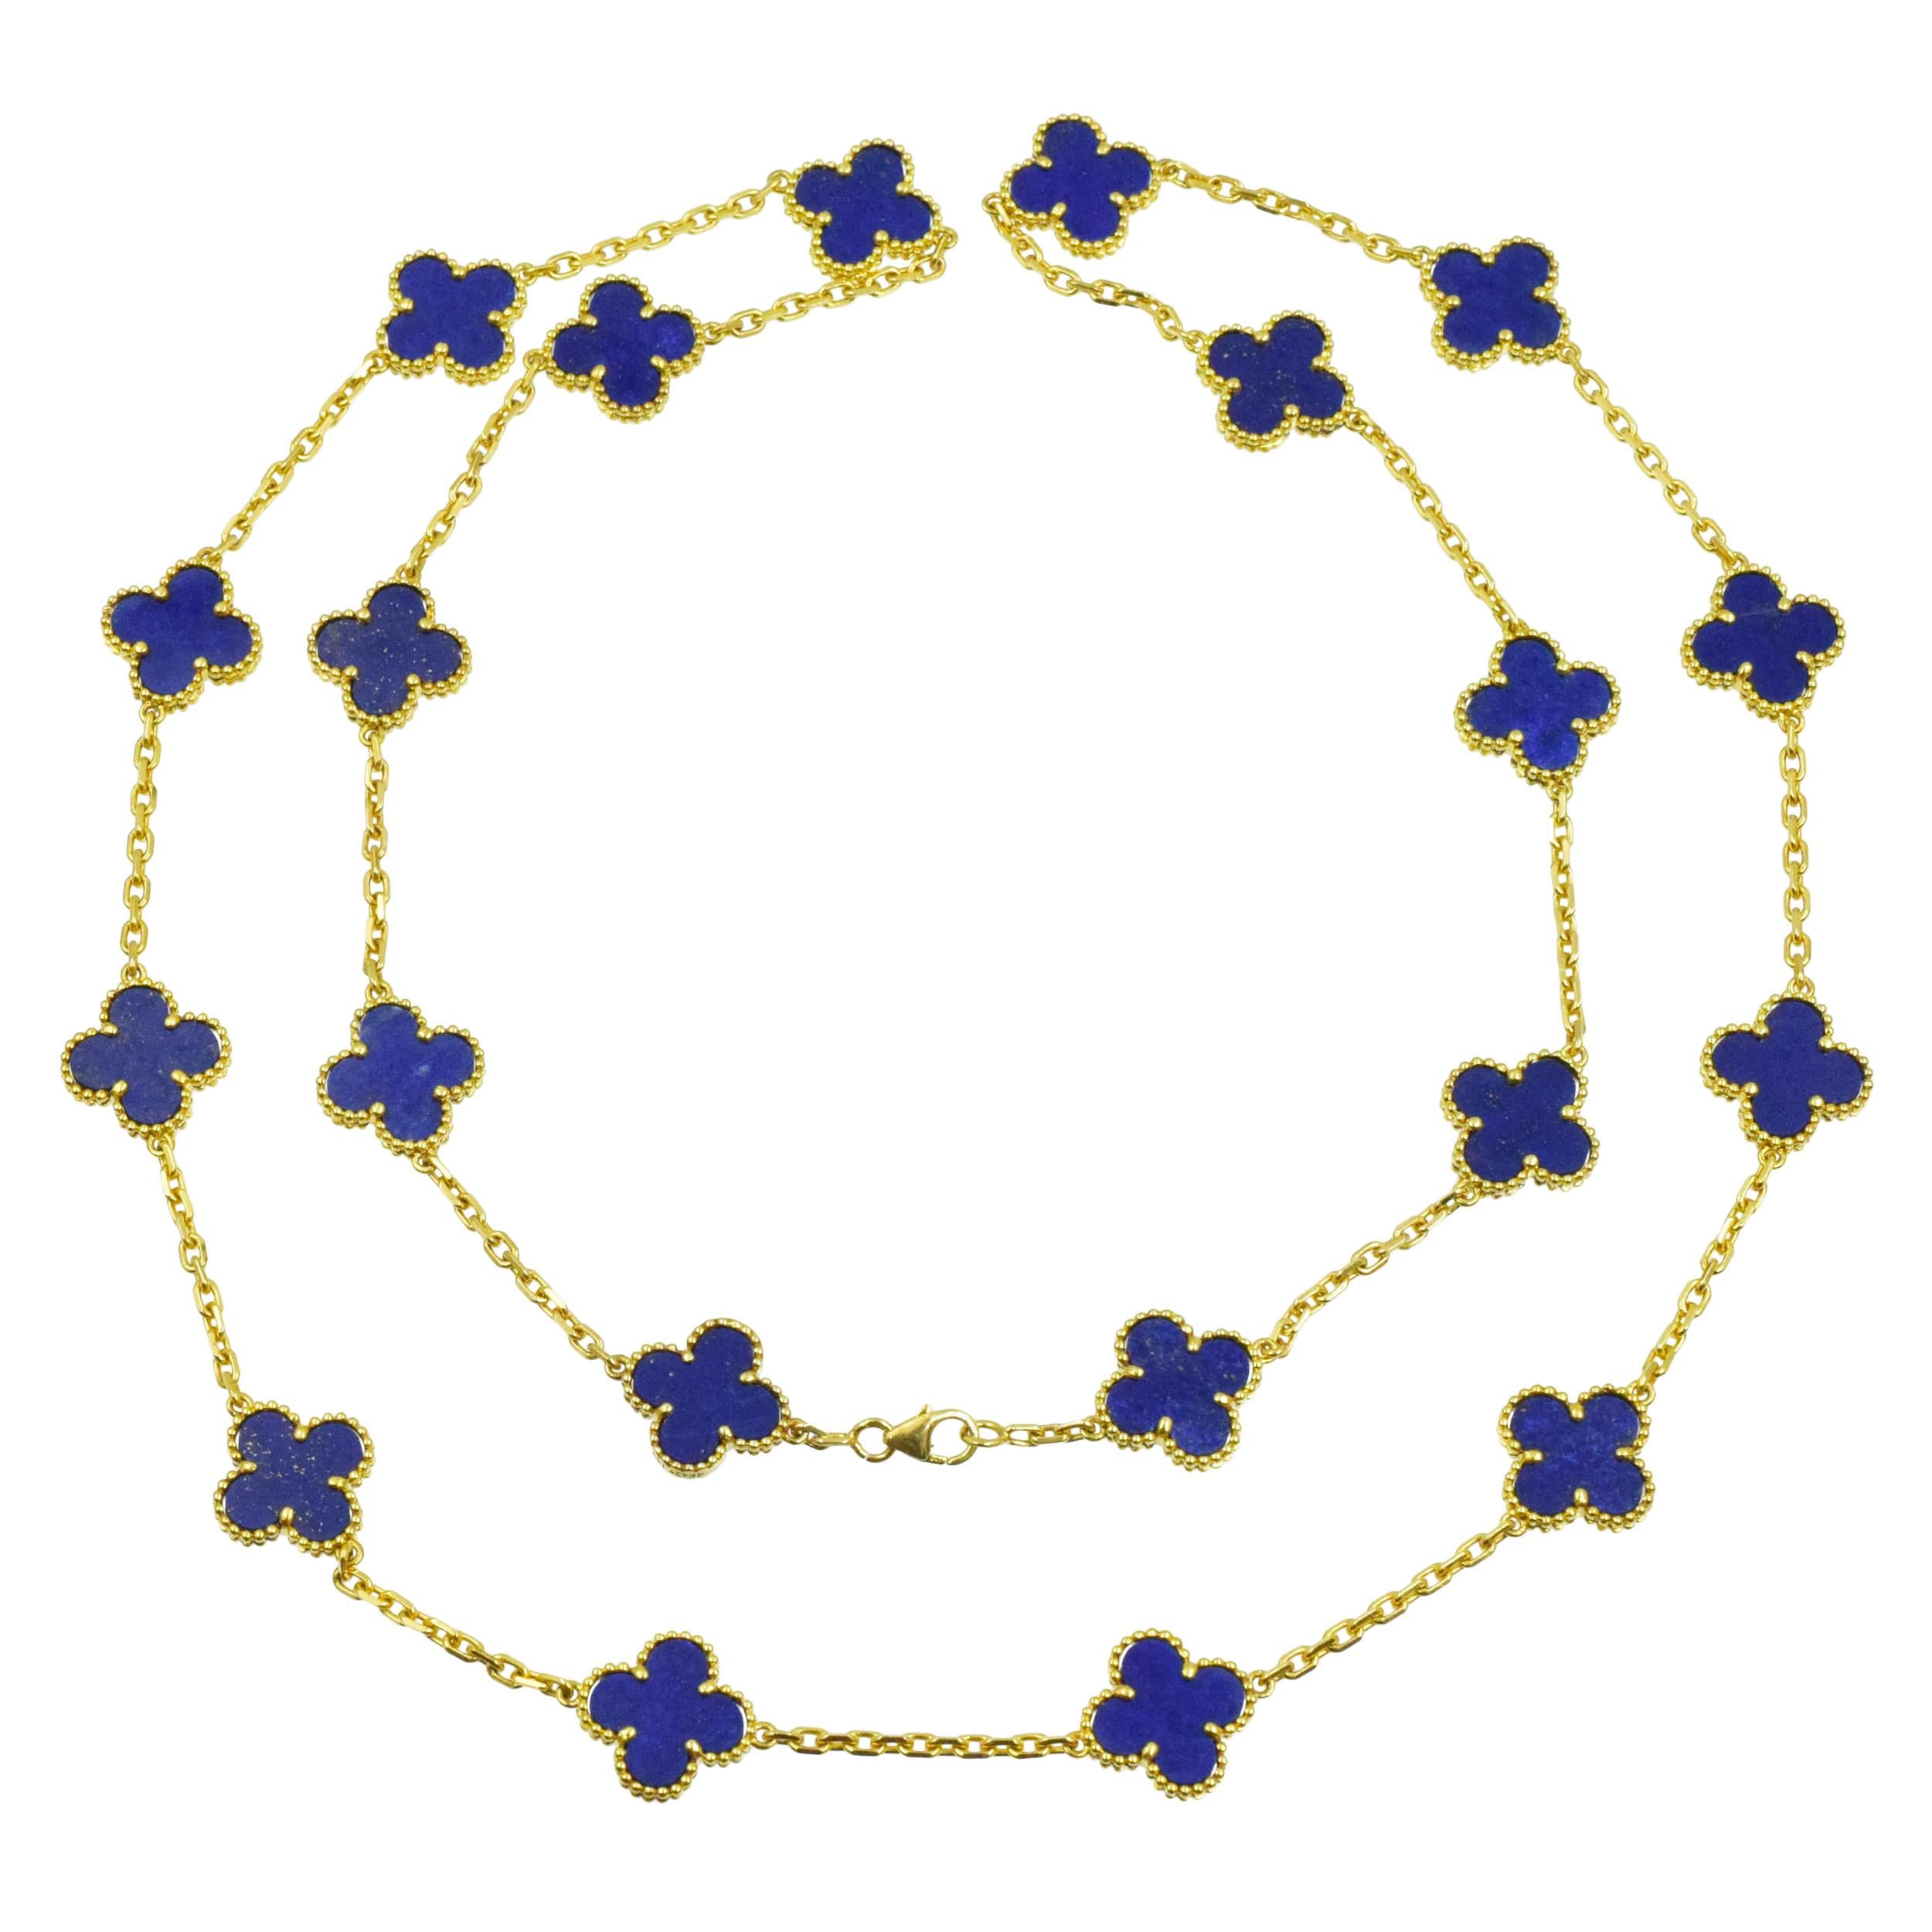 VCA Lapis Lazuli Vintage Alhambra Halskette in 18k
Gelbgold. Die Halskette besteht aus 20 Lapislazuli-Klee-Motiven. Ausgestattet mit Karabinerverschluß. Beschriftet: VCA 750, 4K629.132. 
Gestempelt mit französischen Punzen und Herstellermarken.
